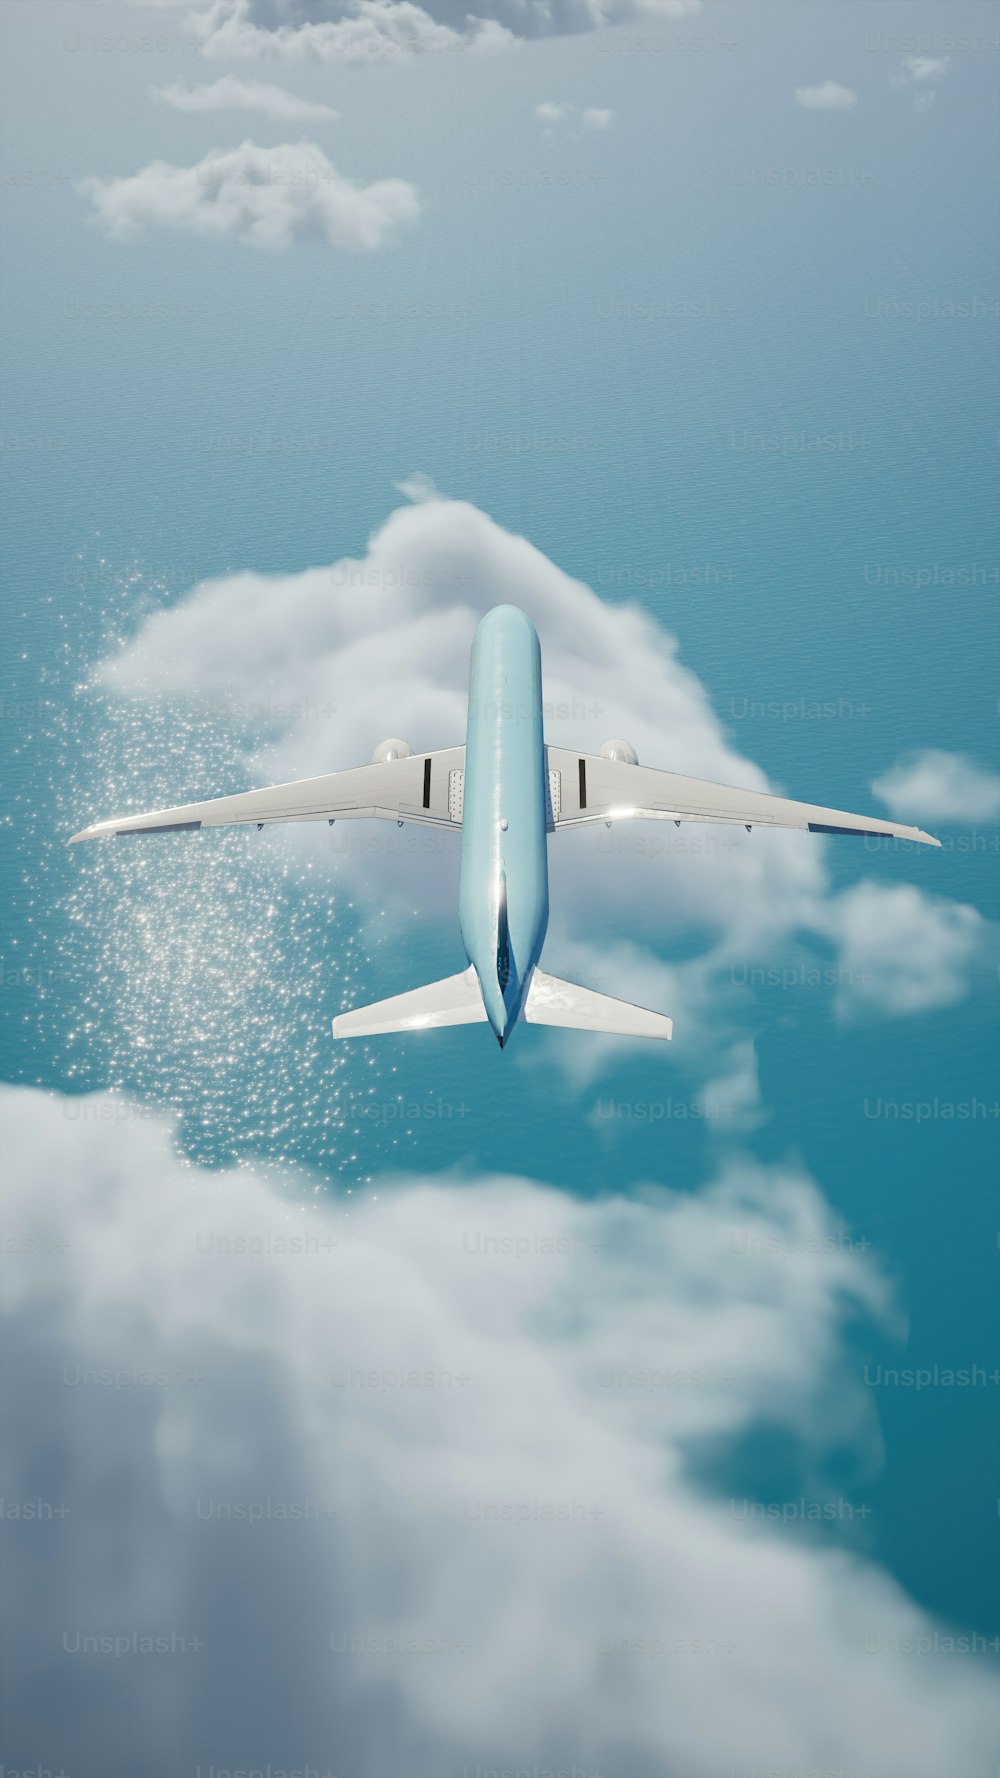 Ein blau-weißes Flugzeug fliegt am Himmel